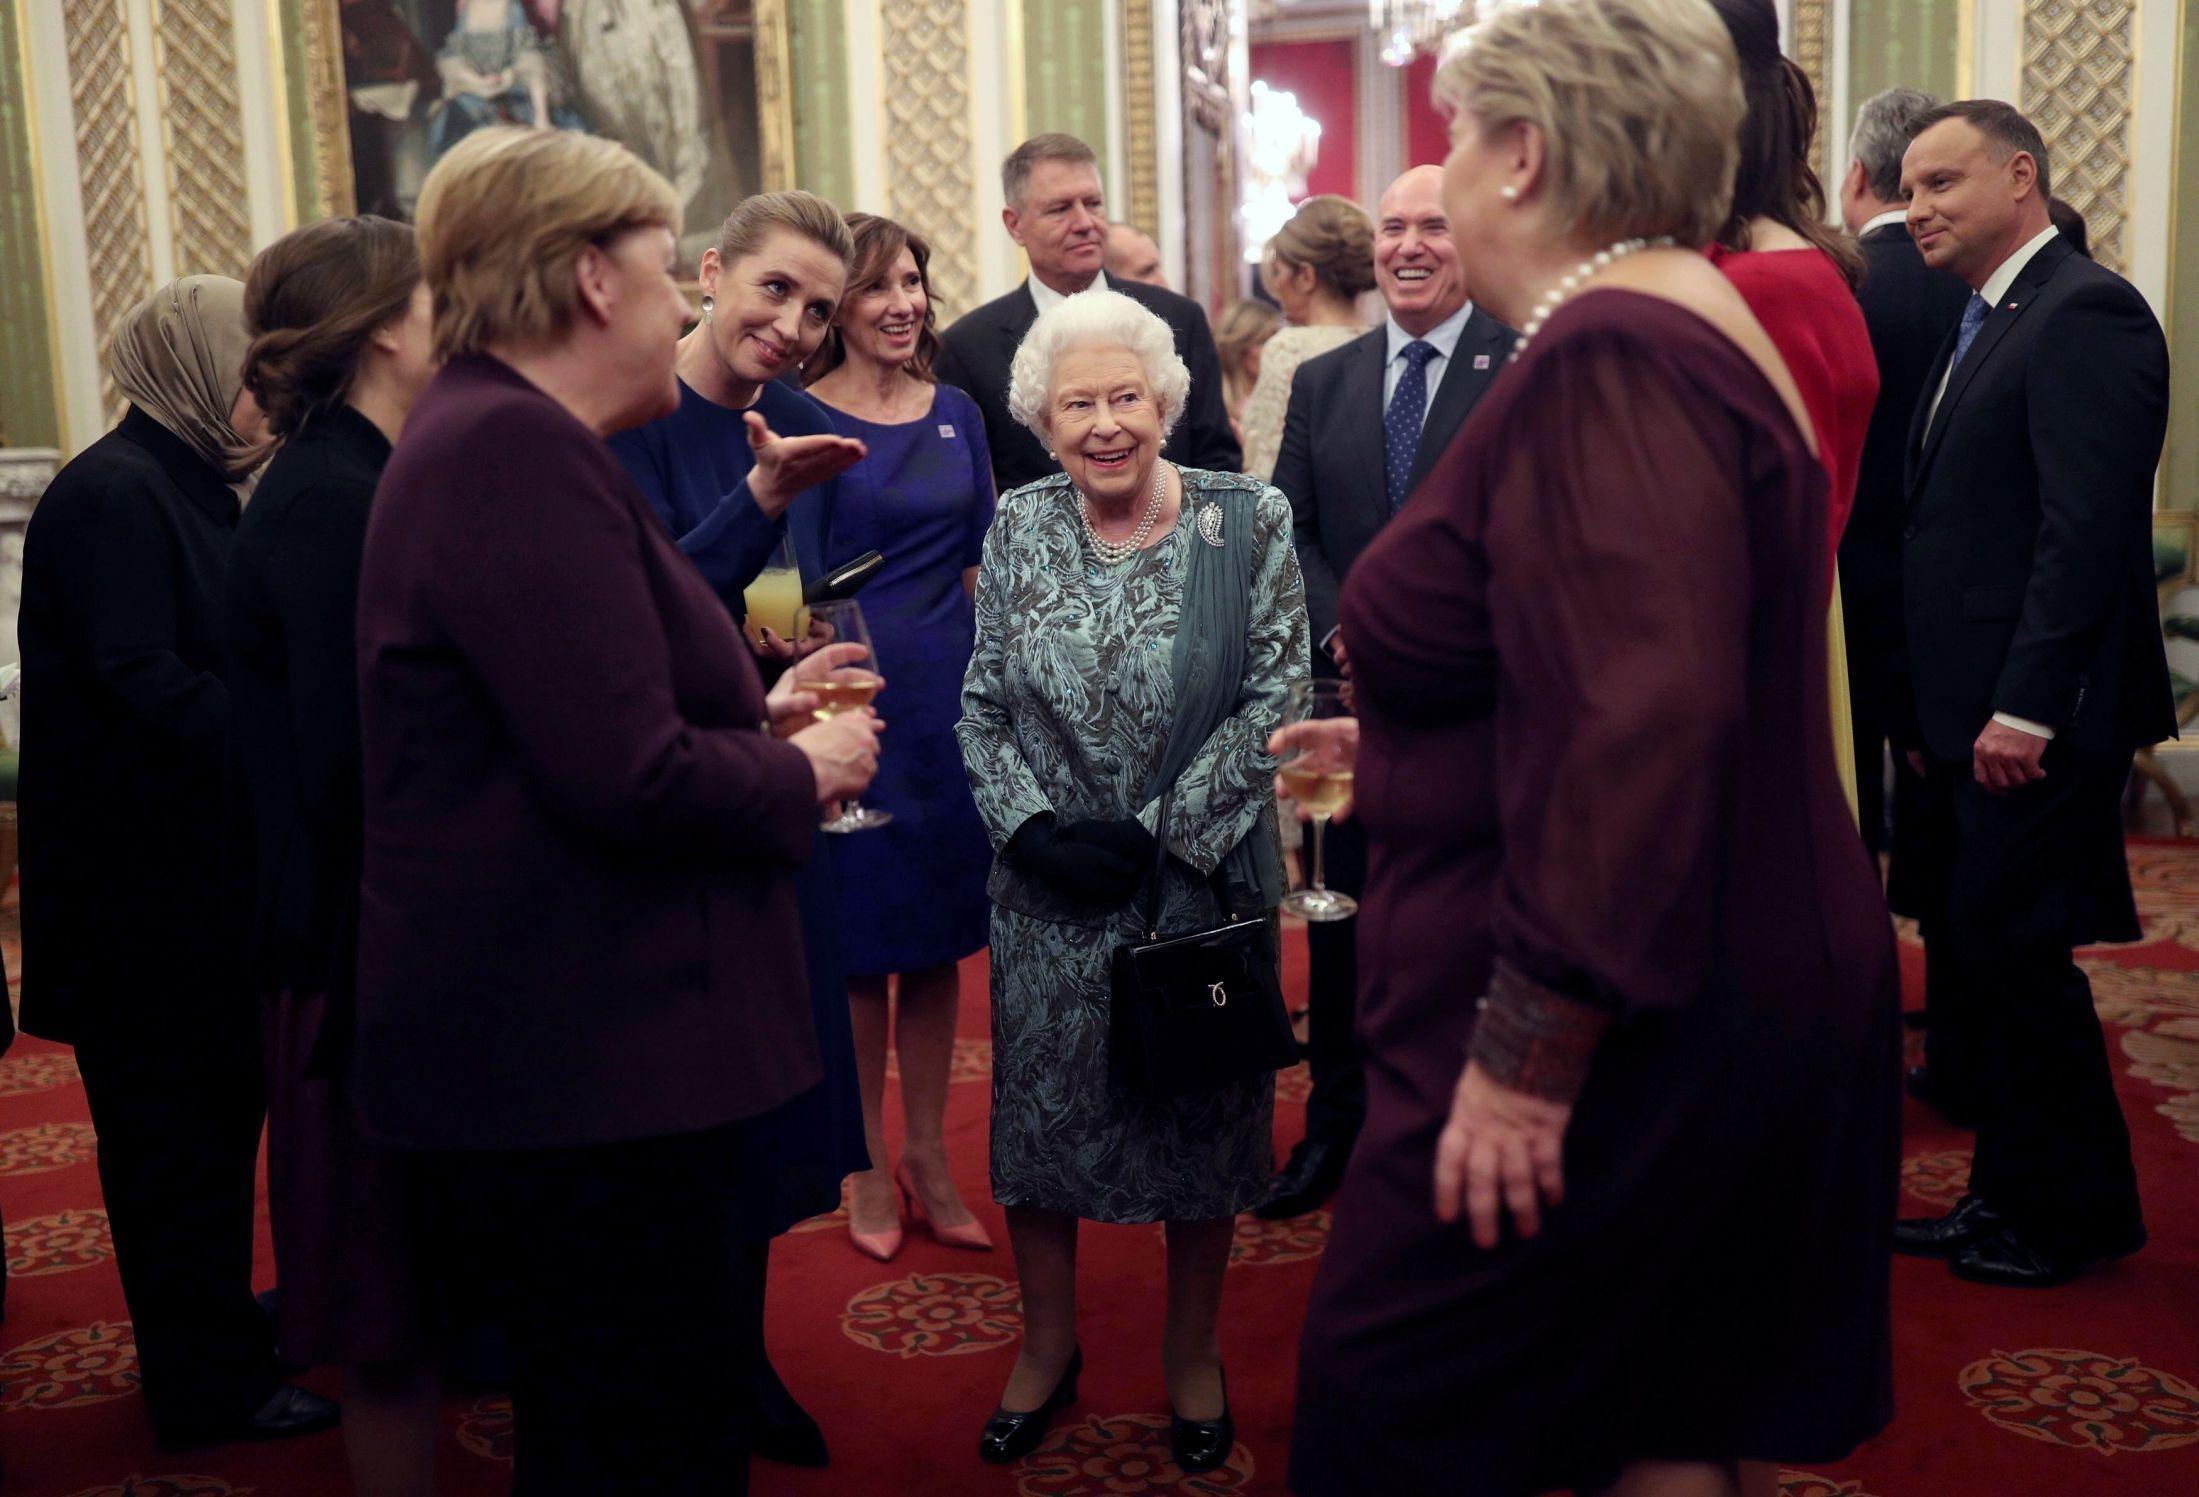 HYGGELIG LAG: Her er dronningen i hyggelig passiar med vår egen statsminister Erna Solberg i en mottakelse på Buckingham Palace tidligere denne uken. Foto: AP